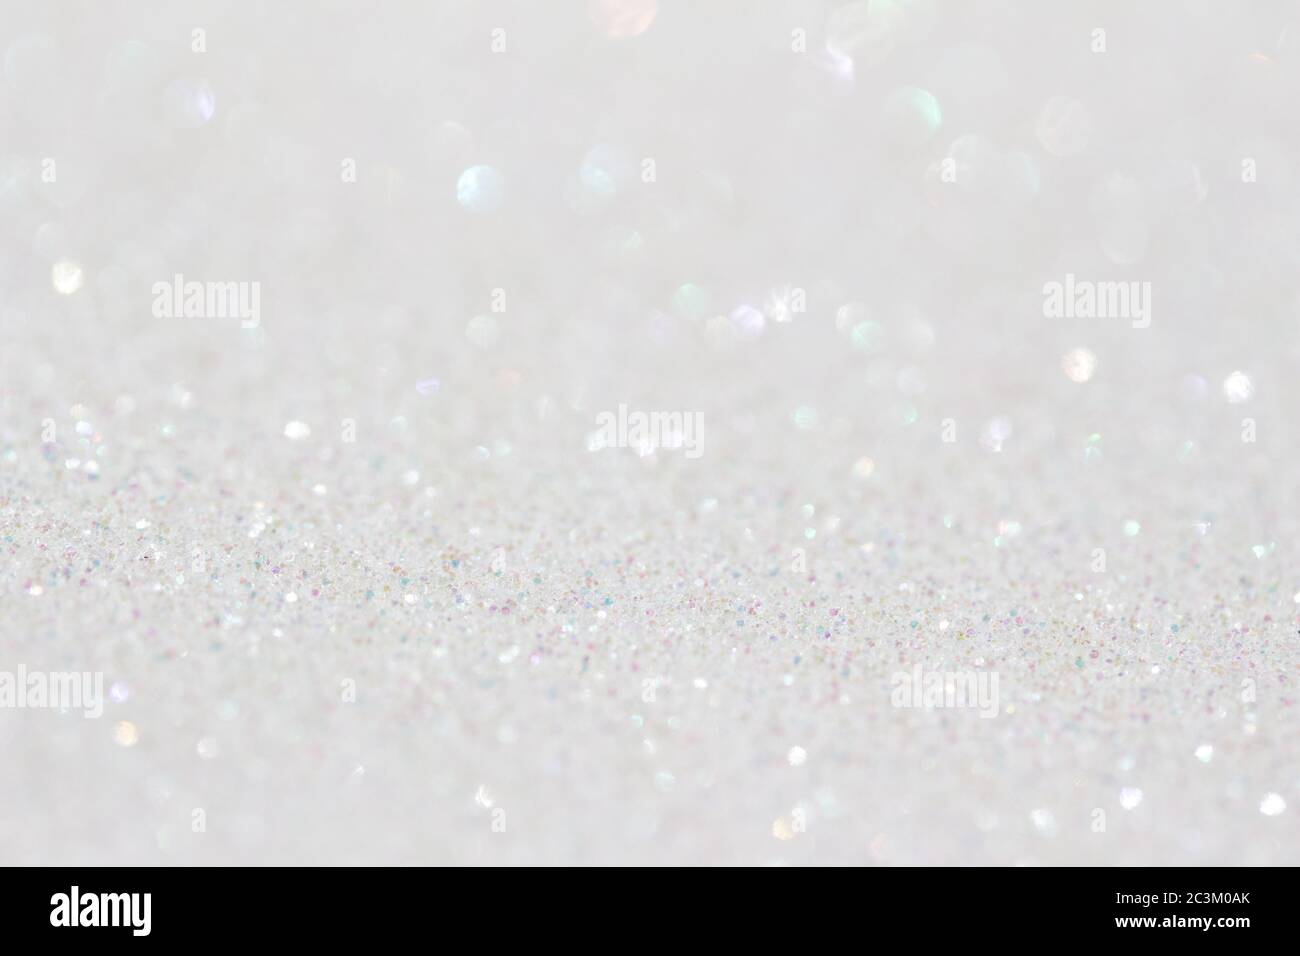 White Glitter HD Wallpapers  White glitter background, White glitter  wallpaper, Glitter background